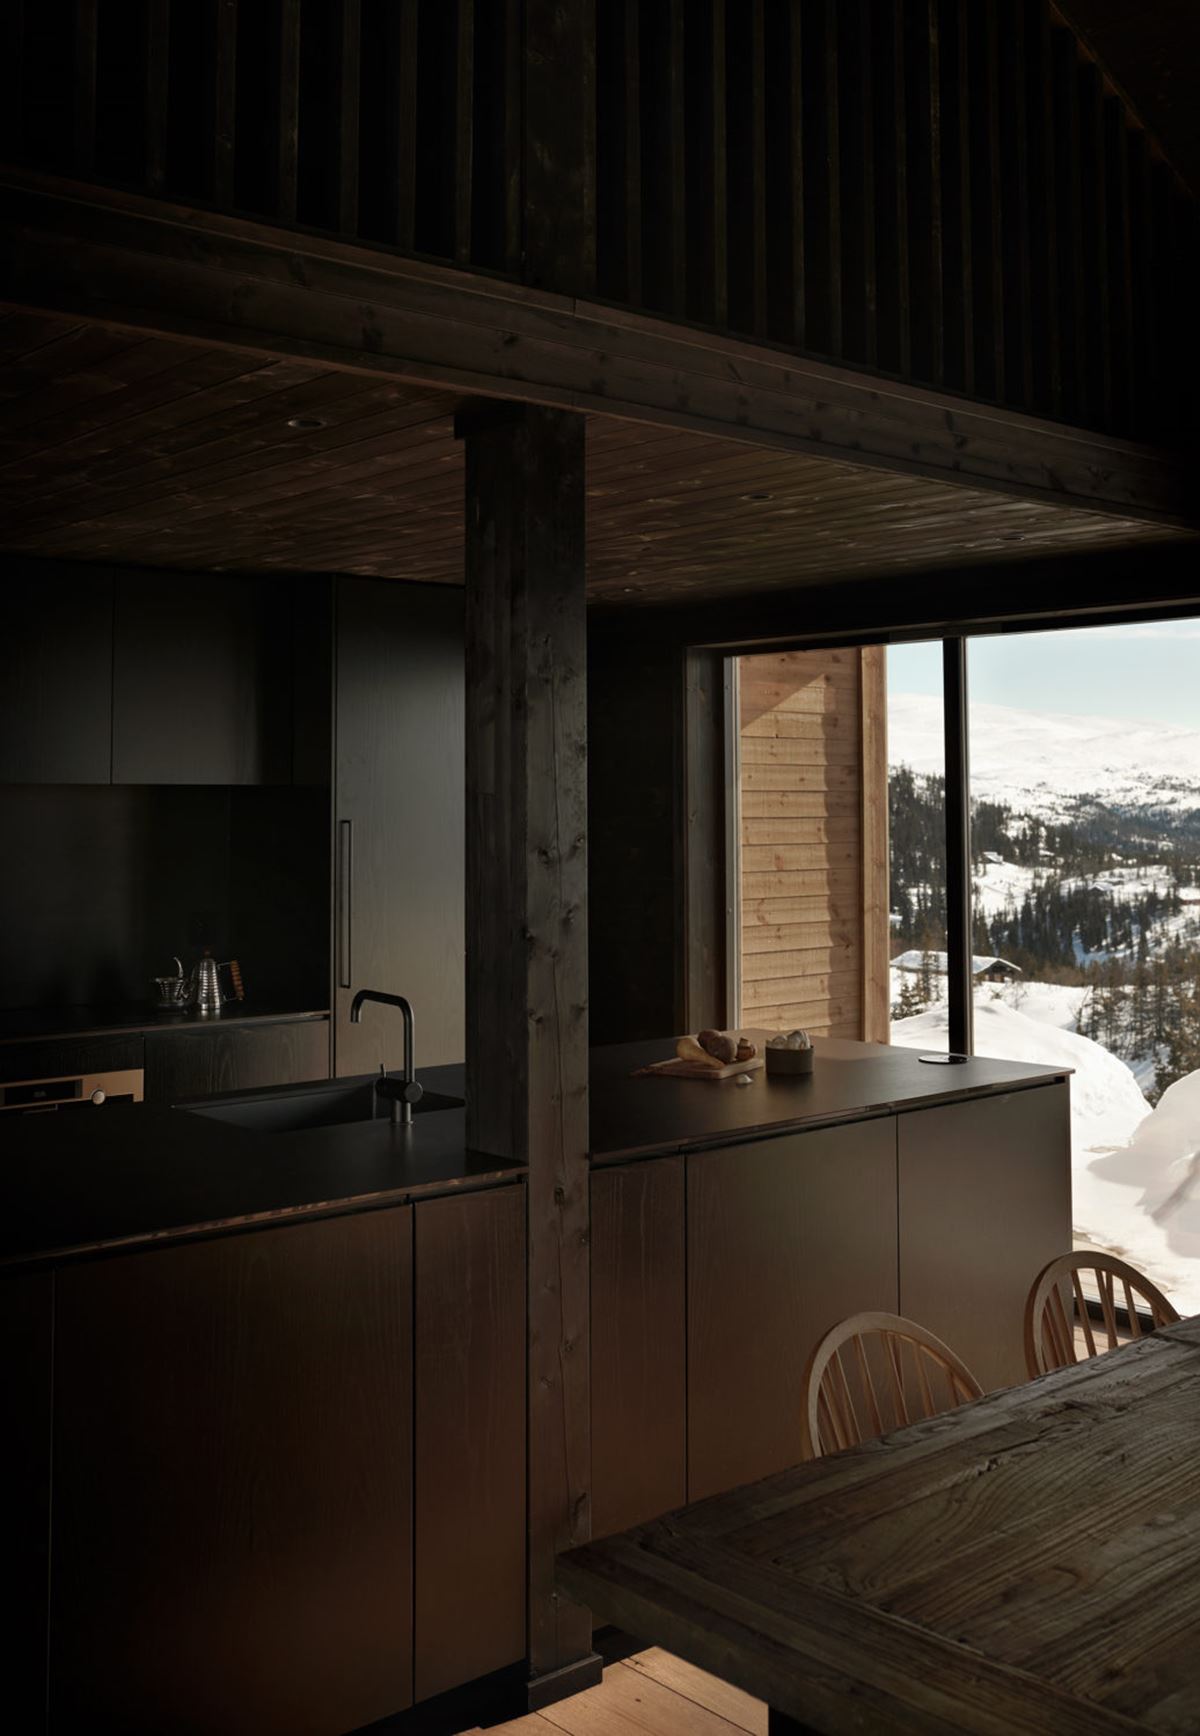 Et mørk kjøkken blir lyst opp av store vinduer og en utsikt over snødekte landskap